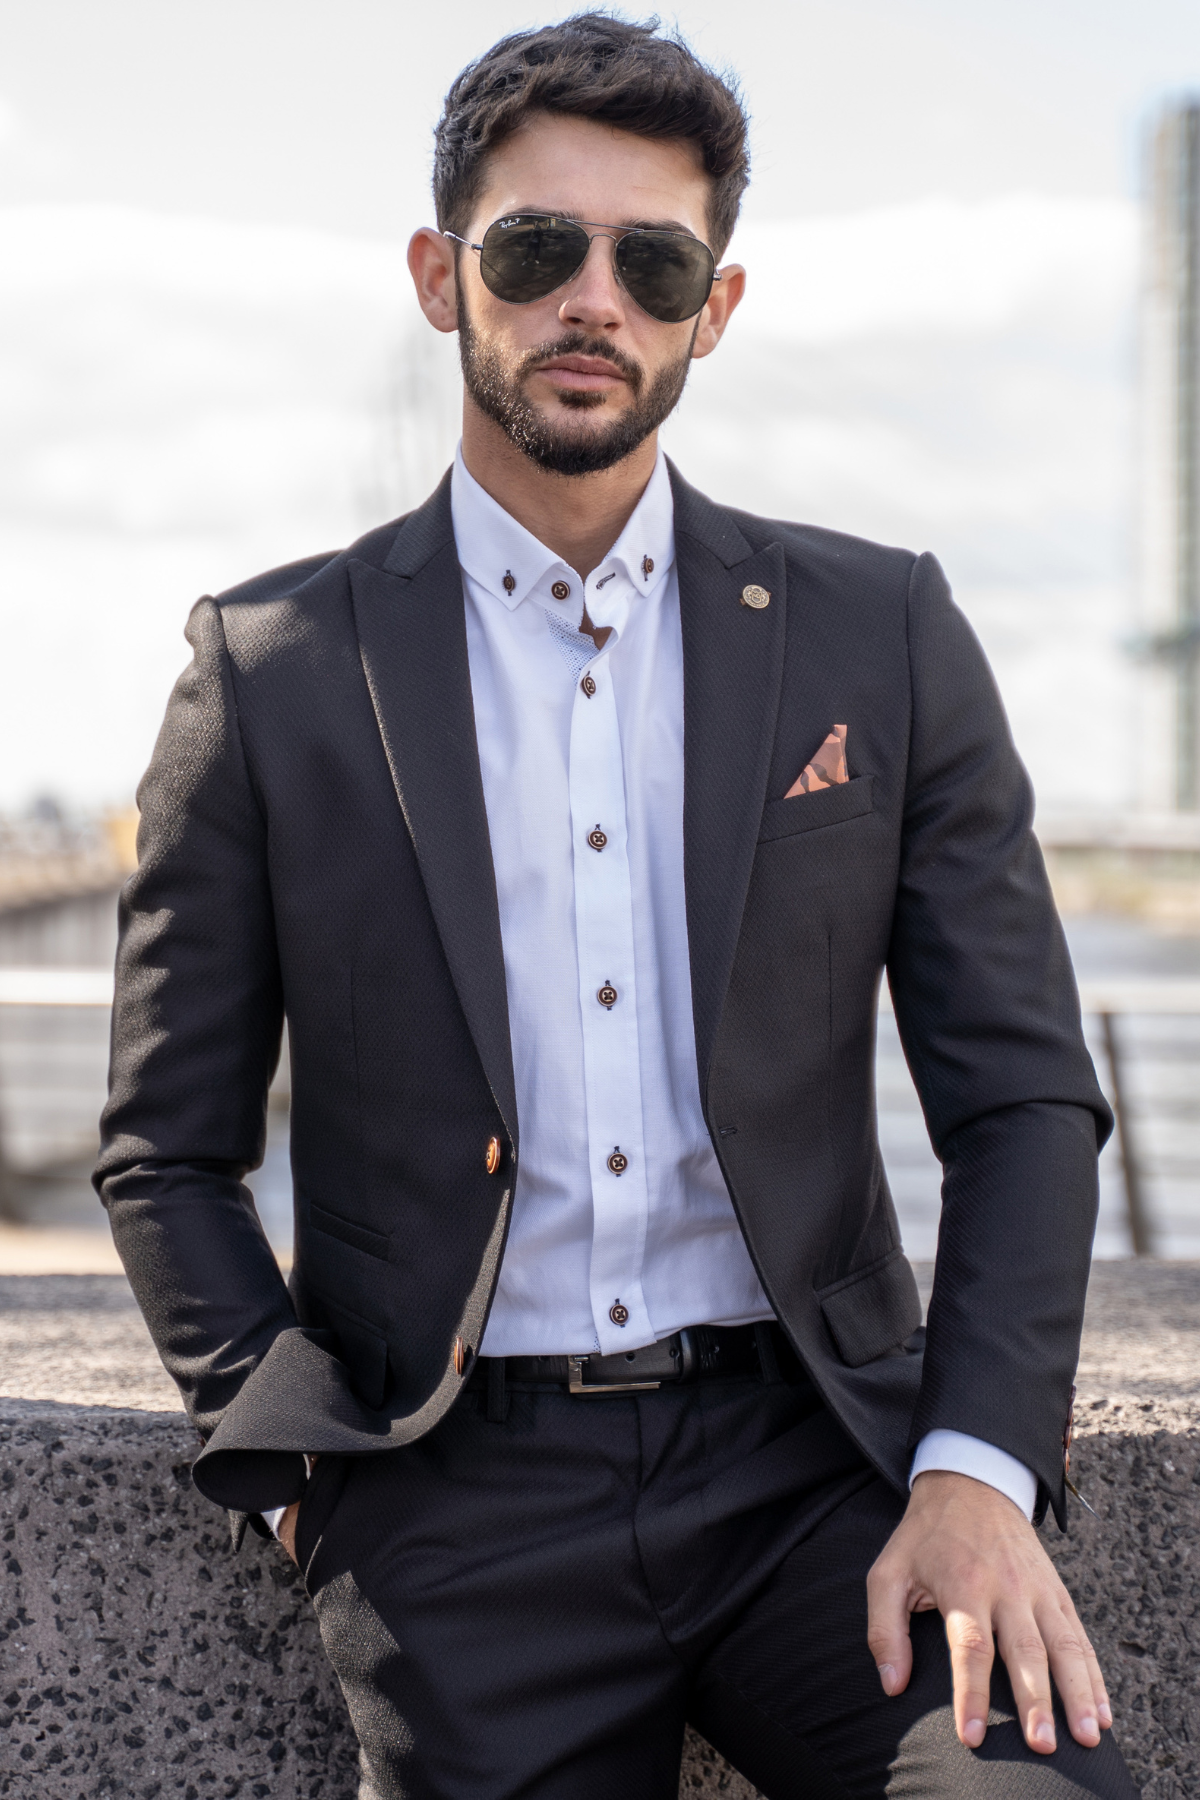 Buy Black Suit Sets for Men by ARROW Online | Ajio.com